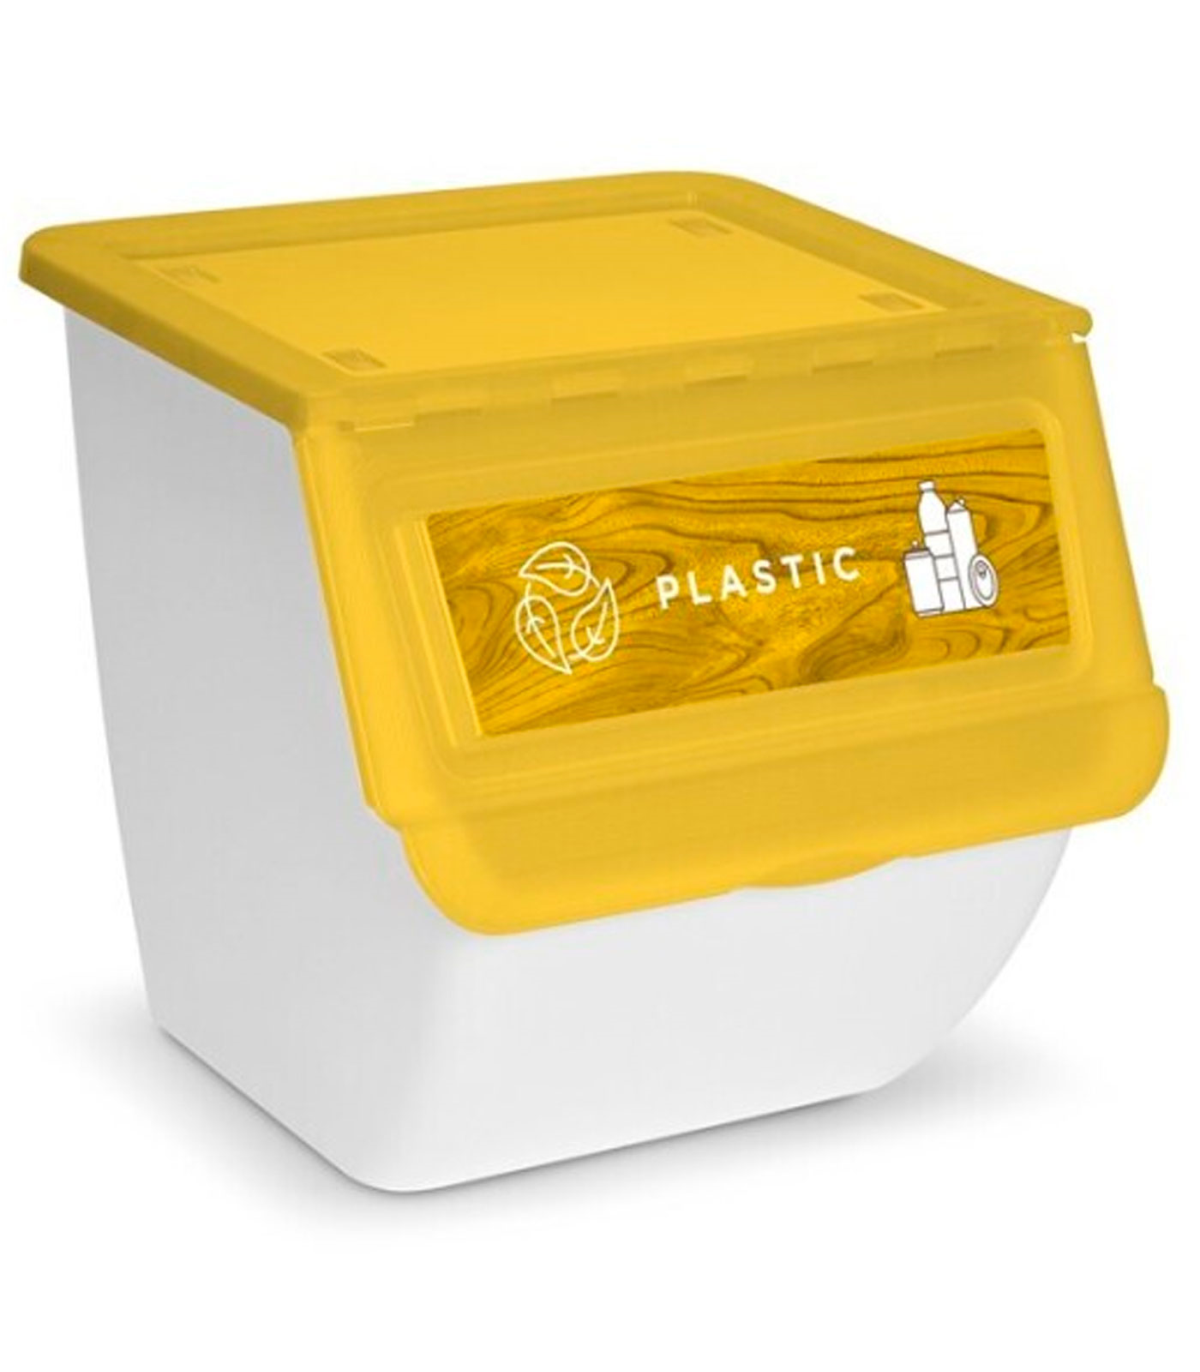 Cajas plástico desde 3,04€/Unidad